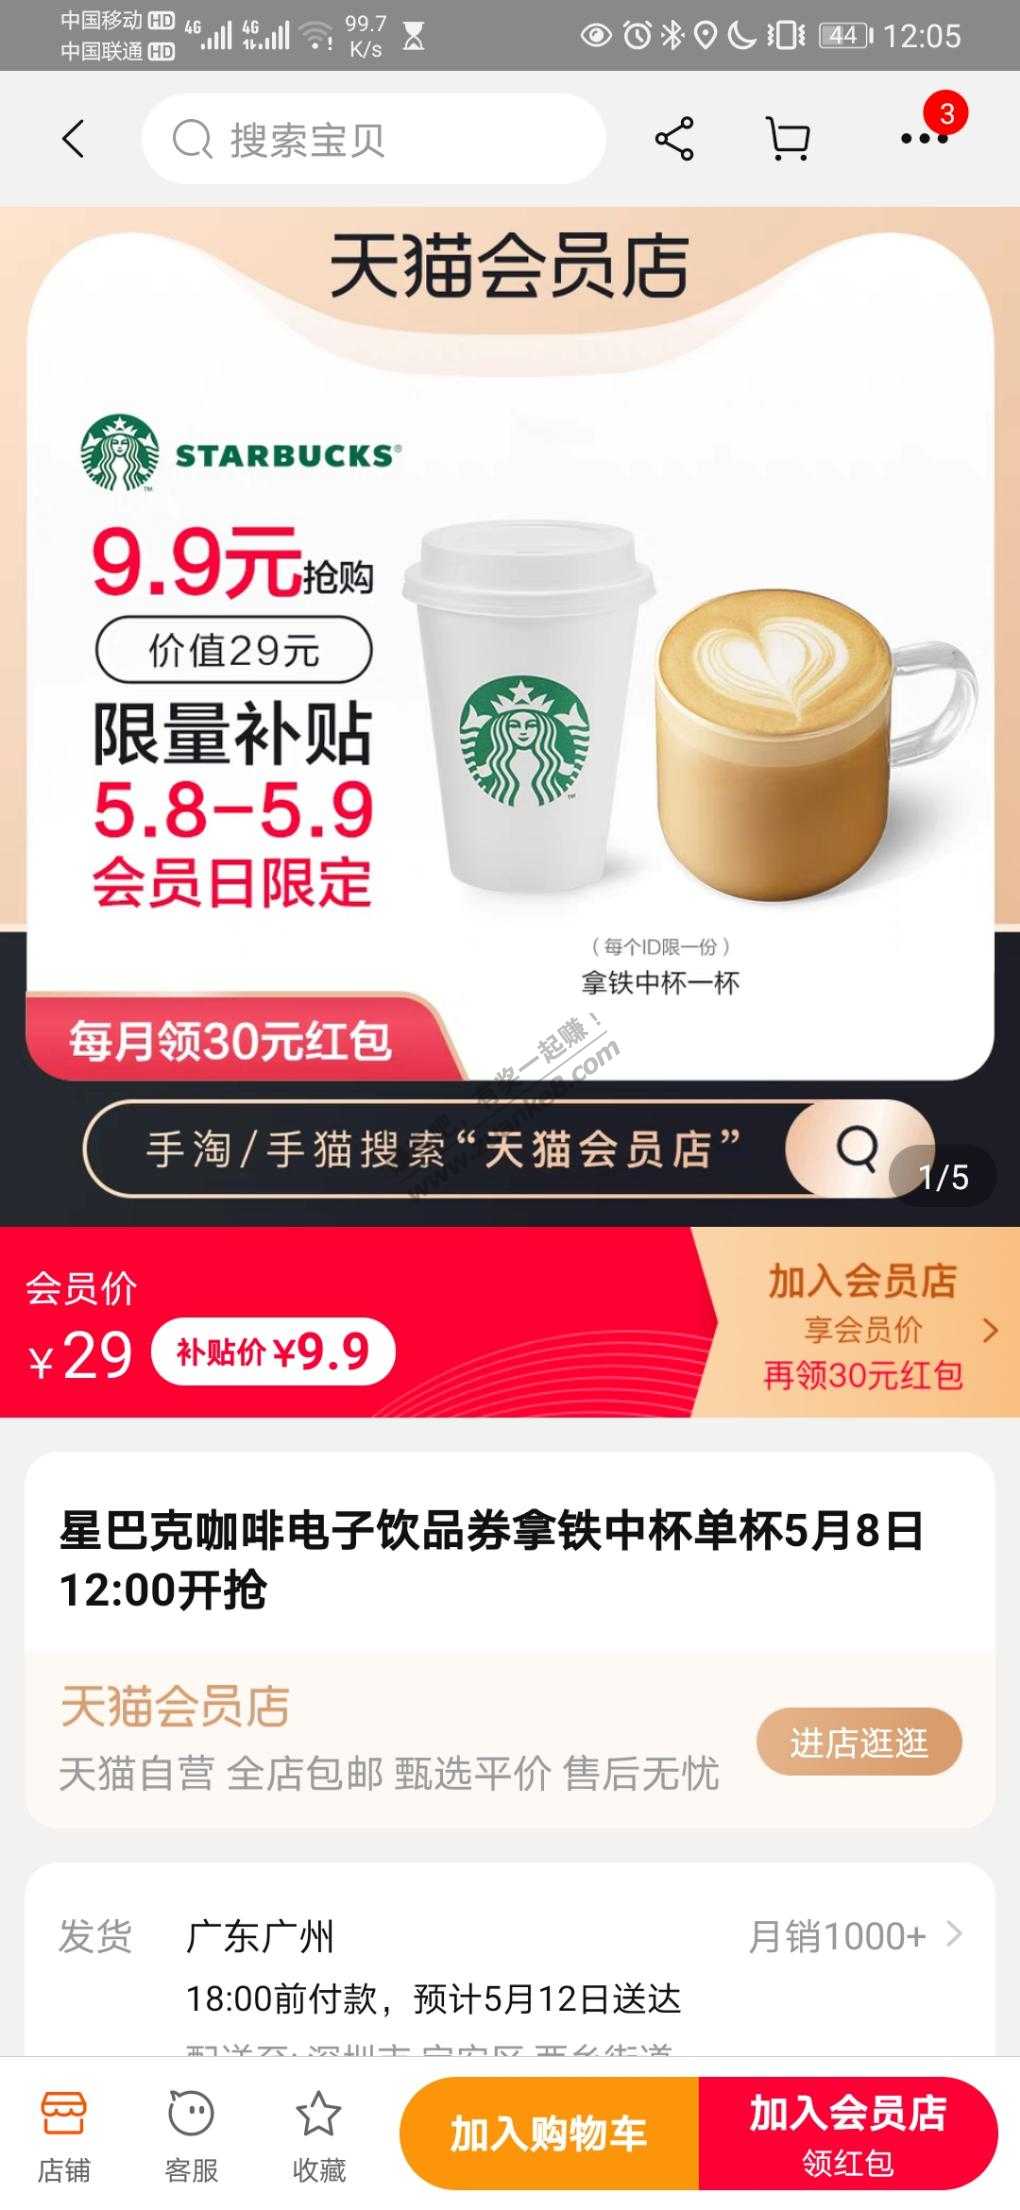 天猫会员店9.9星巴克咖啡-惠小助(52huixz.com)